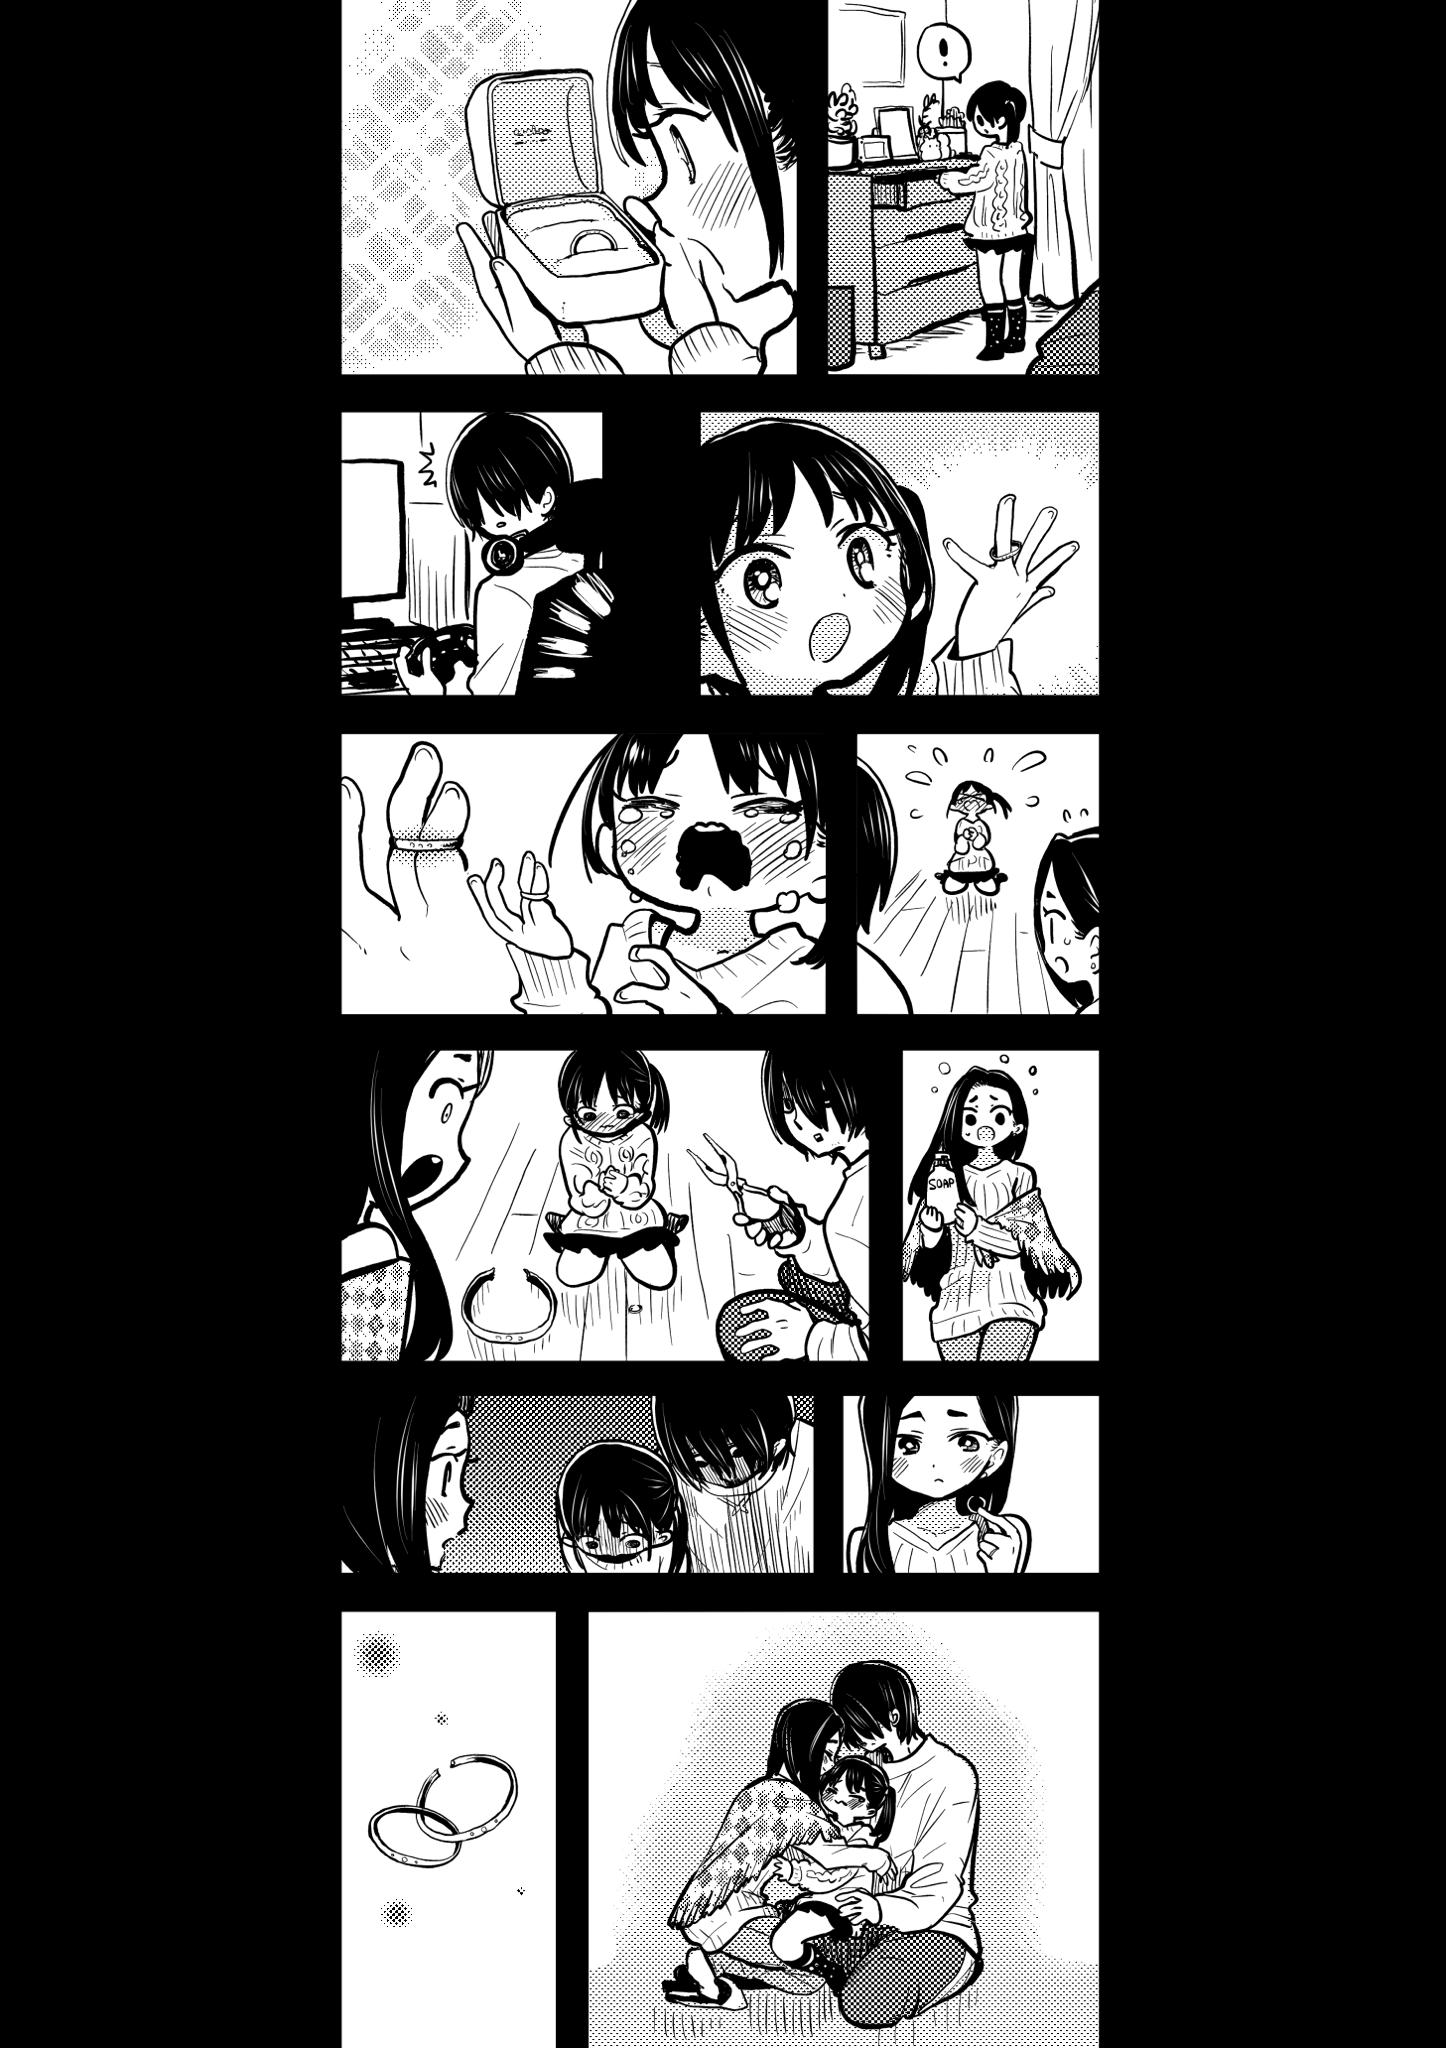 Boku no Kokoro no Yabai Yatsu Vol.9 Ch.116 Page 1 - Mangago